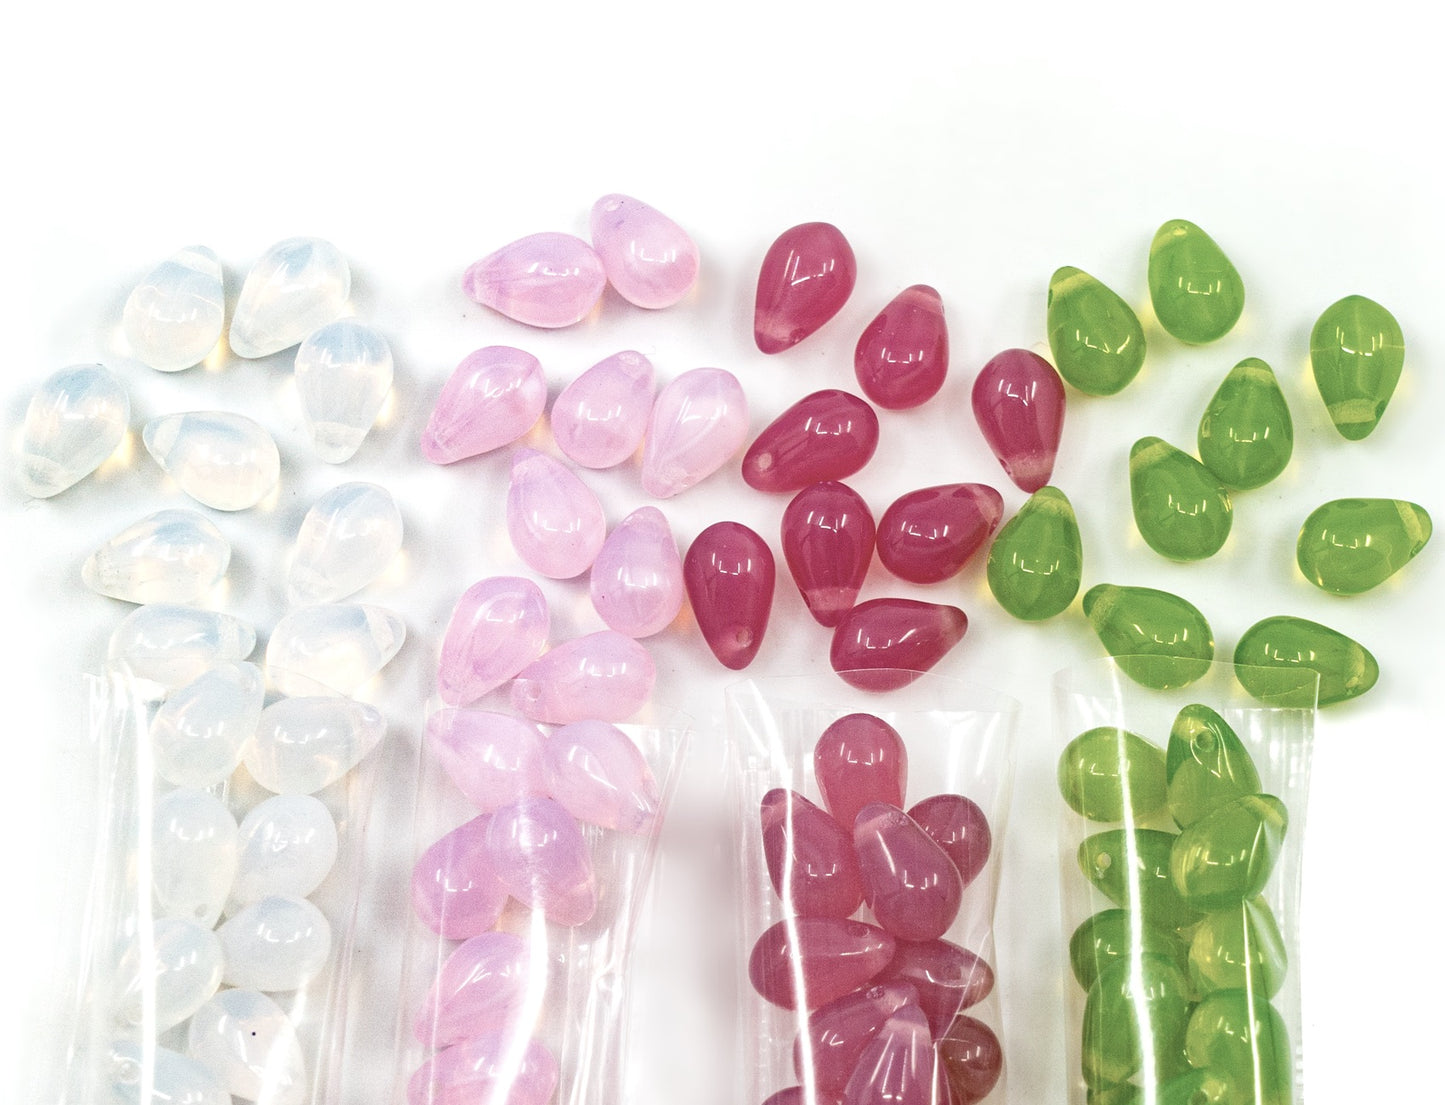 Über 120 Perlen-Set mit 6 x 9 mm großen Anhänger-Tropfenperlen – tropfenförmige Glasperlen für die Schmuckherstellung, Set in 4 Opalfarben: Weiß, Rosa, Dunkelrosa, Grasgrün